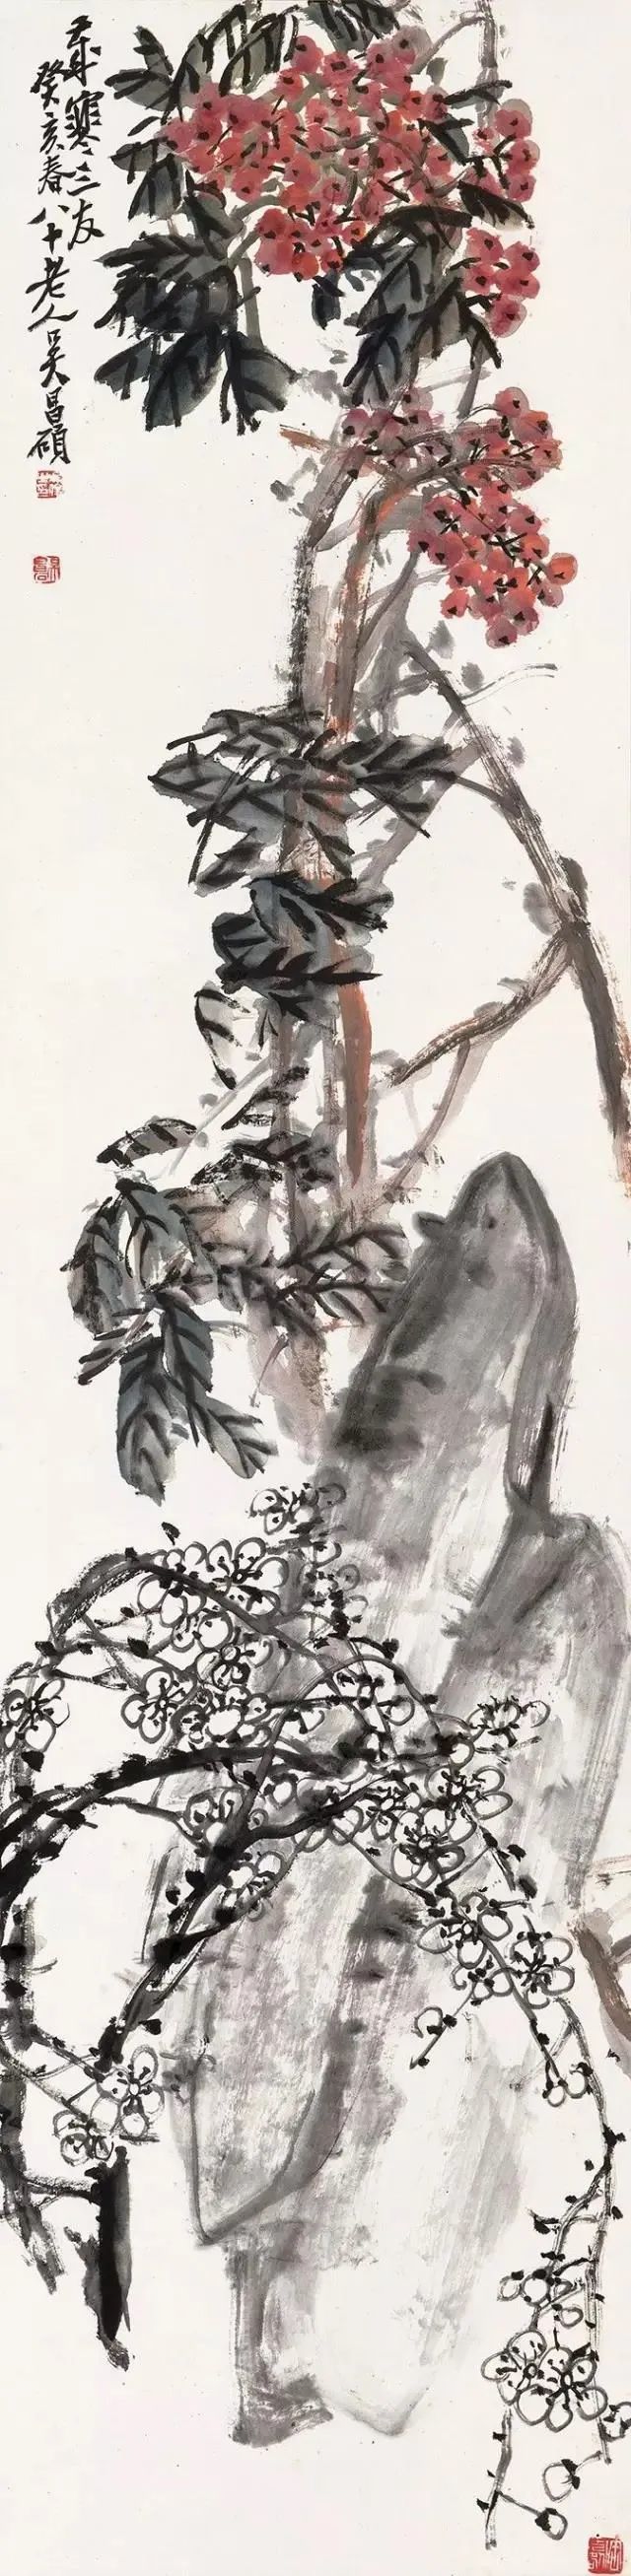 吴昌硕是晚清着名画家,书法家,篆刻家,为"后海派"中的代表.